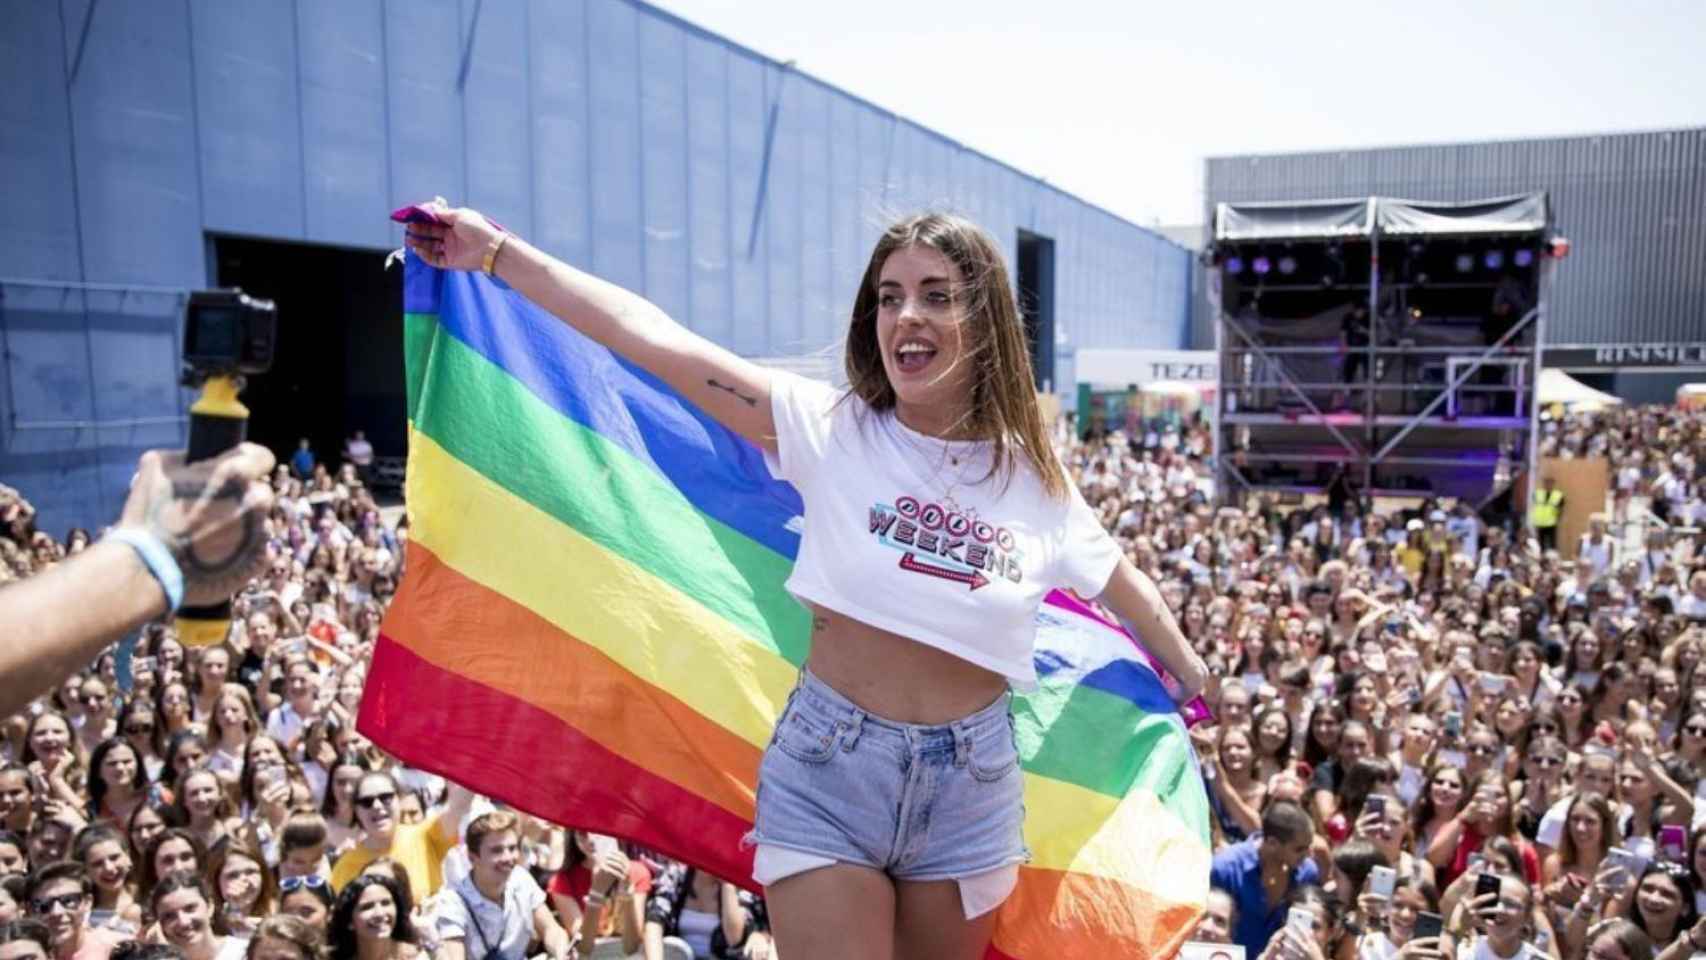 La influencer Dulceida llevando la bandera LGBTI en el 'Dulceweekend' / BEKIA